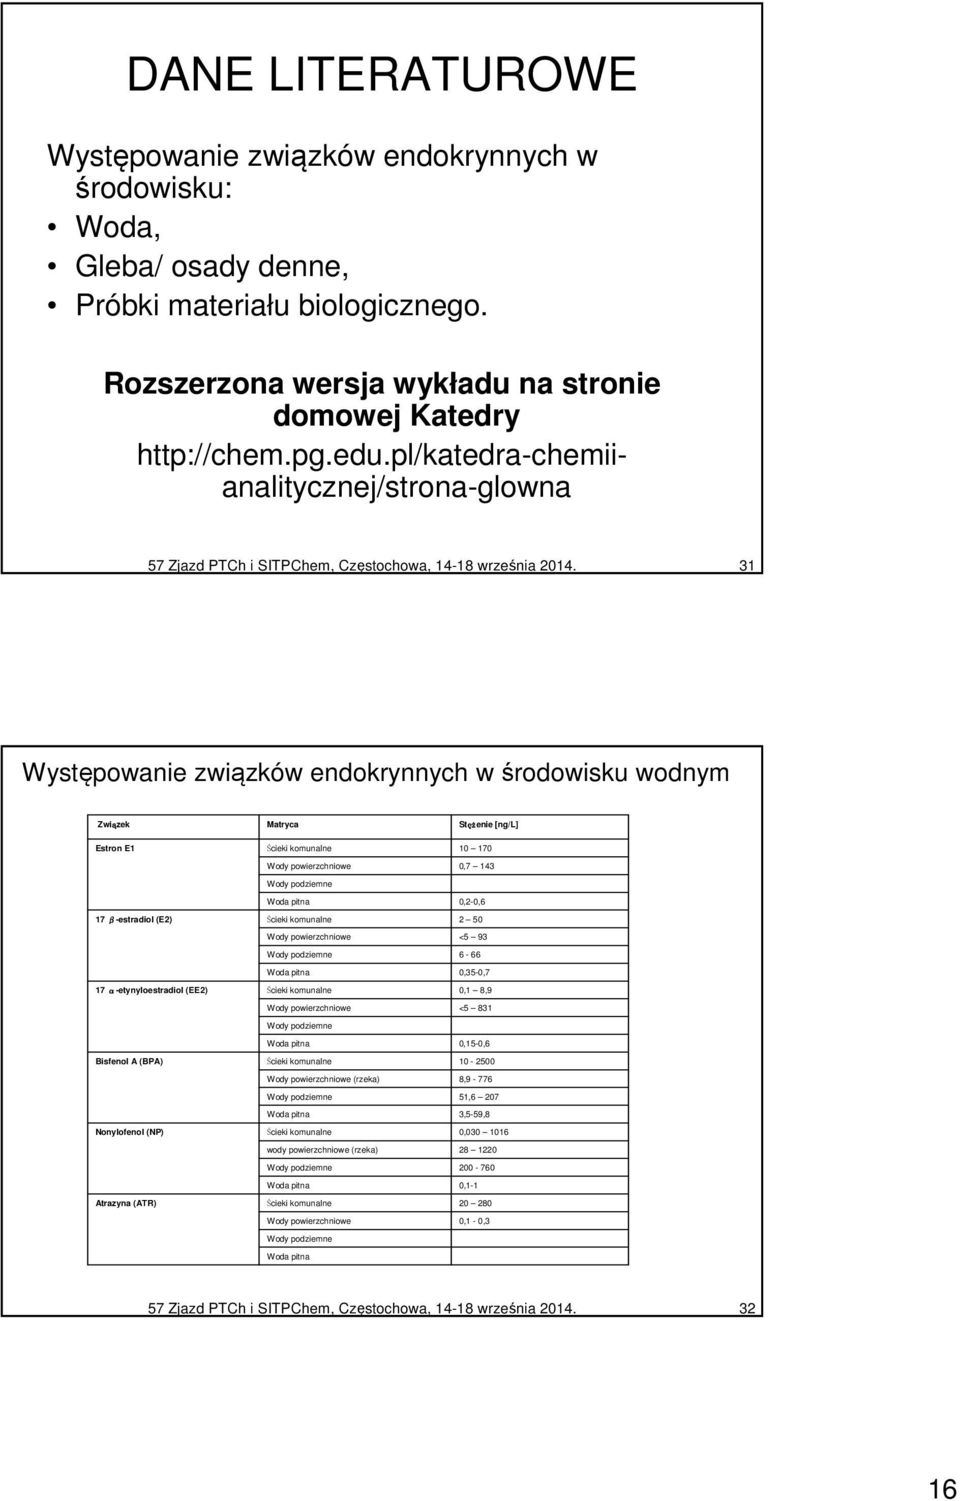 31 Występowanie związków endokrynnych w środowisku wodnym Związek Matryca Stęż ężenie [ng/l] Estron E1 17 β-estradiol (E2) 17 α-etynyloestradiol (EE2) Bisfenol A (BPA) Nonylofenol (NP) Atrazyna (ATR)